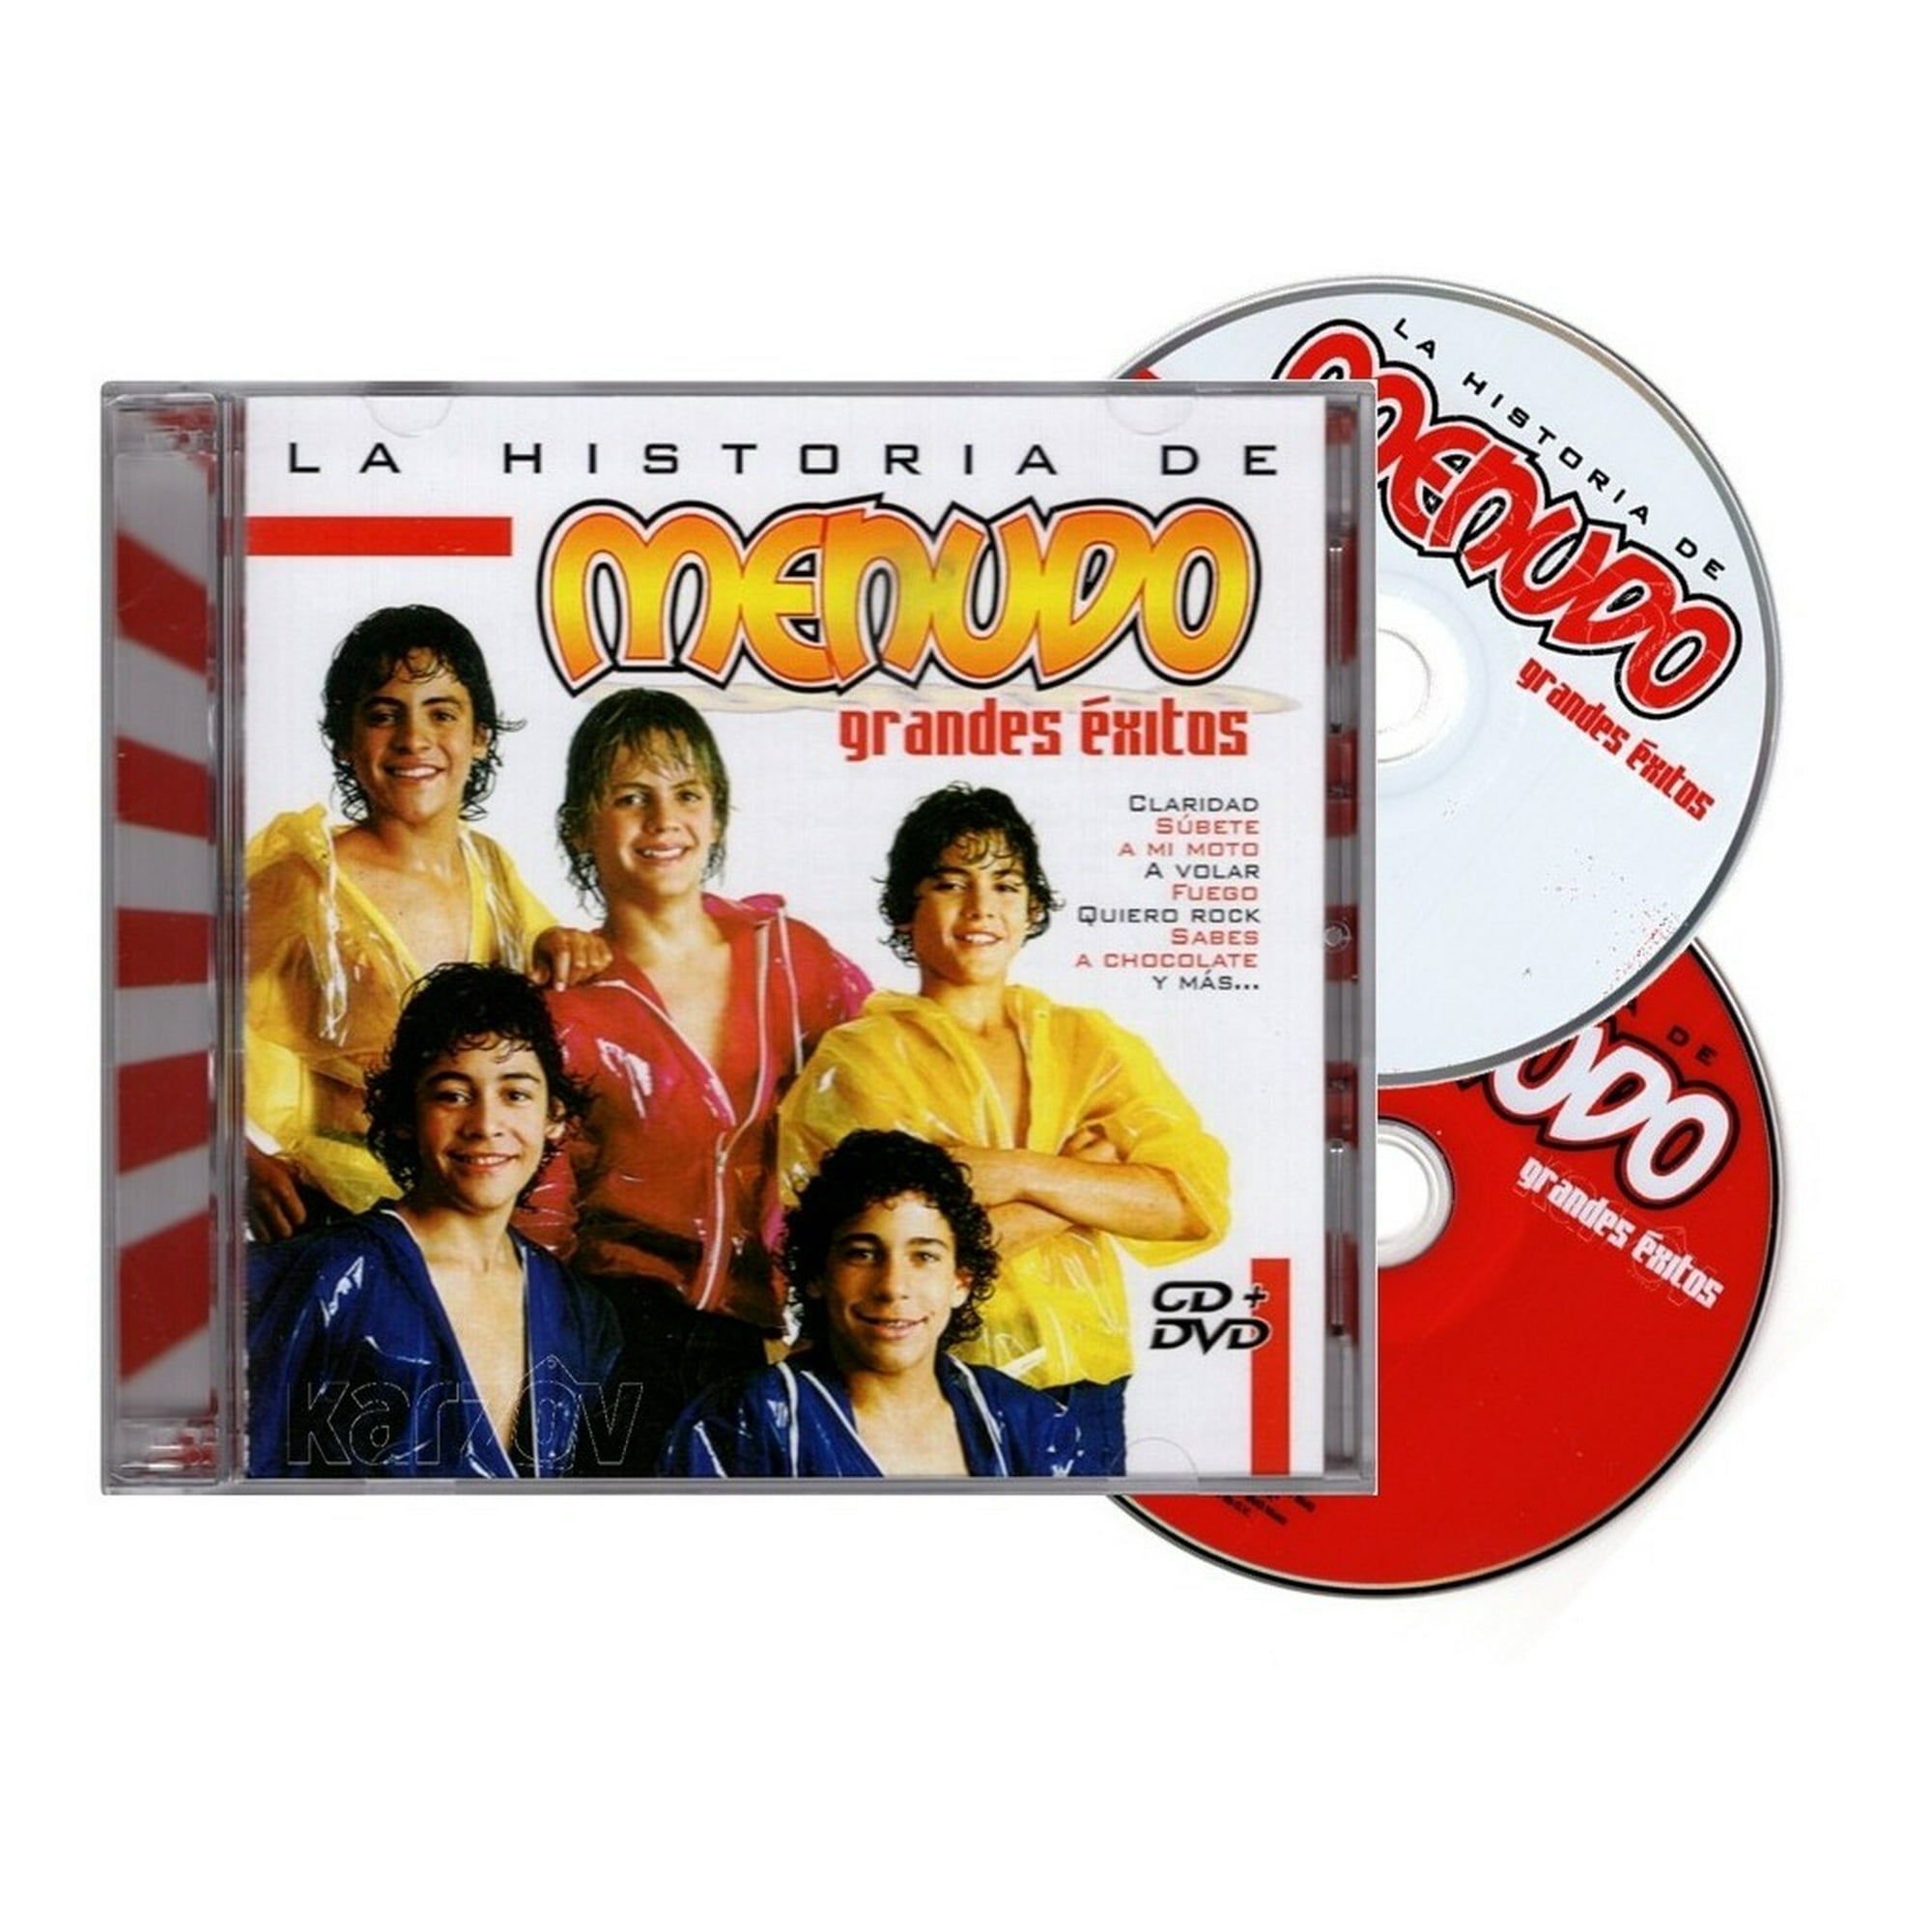 La Historia De Menudo - Grandes Exitos - Disco Cd + Dvd Sony CD + DVD